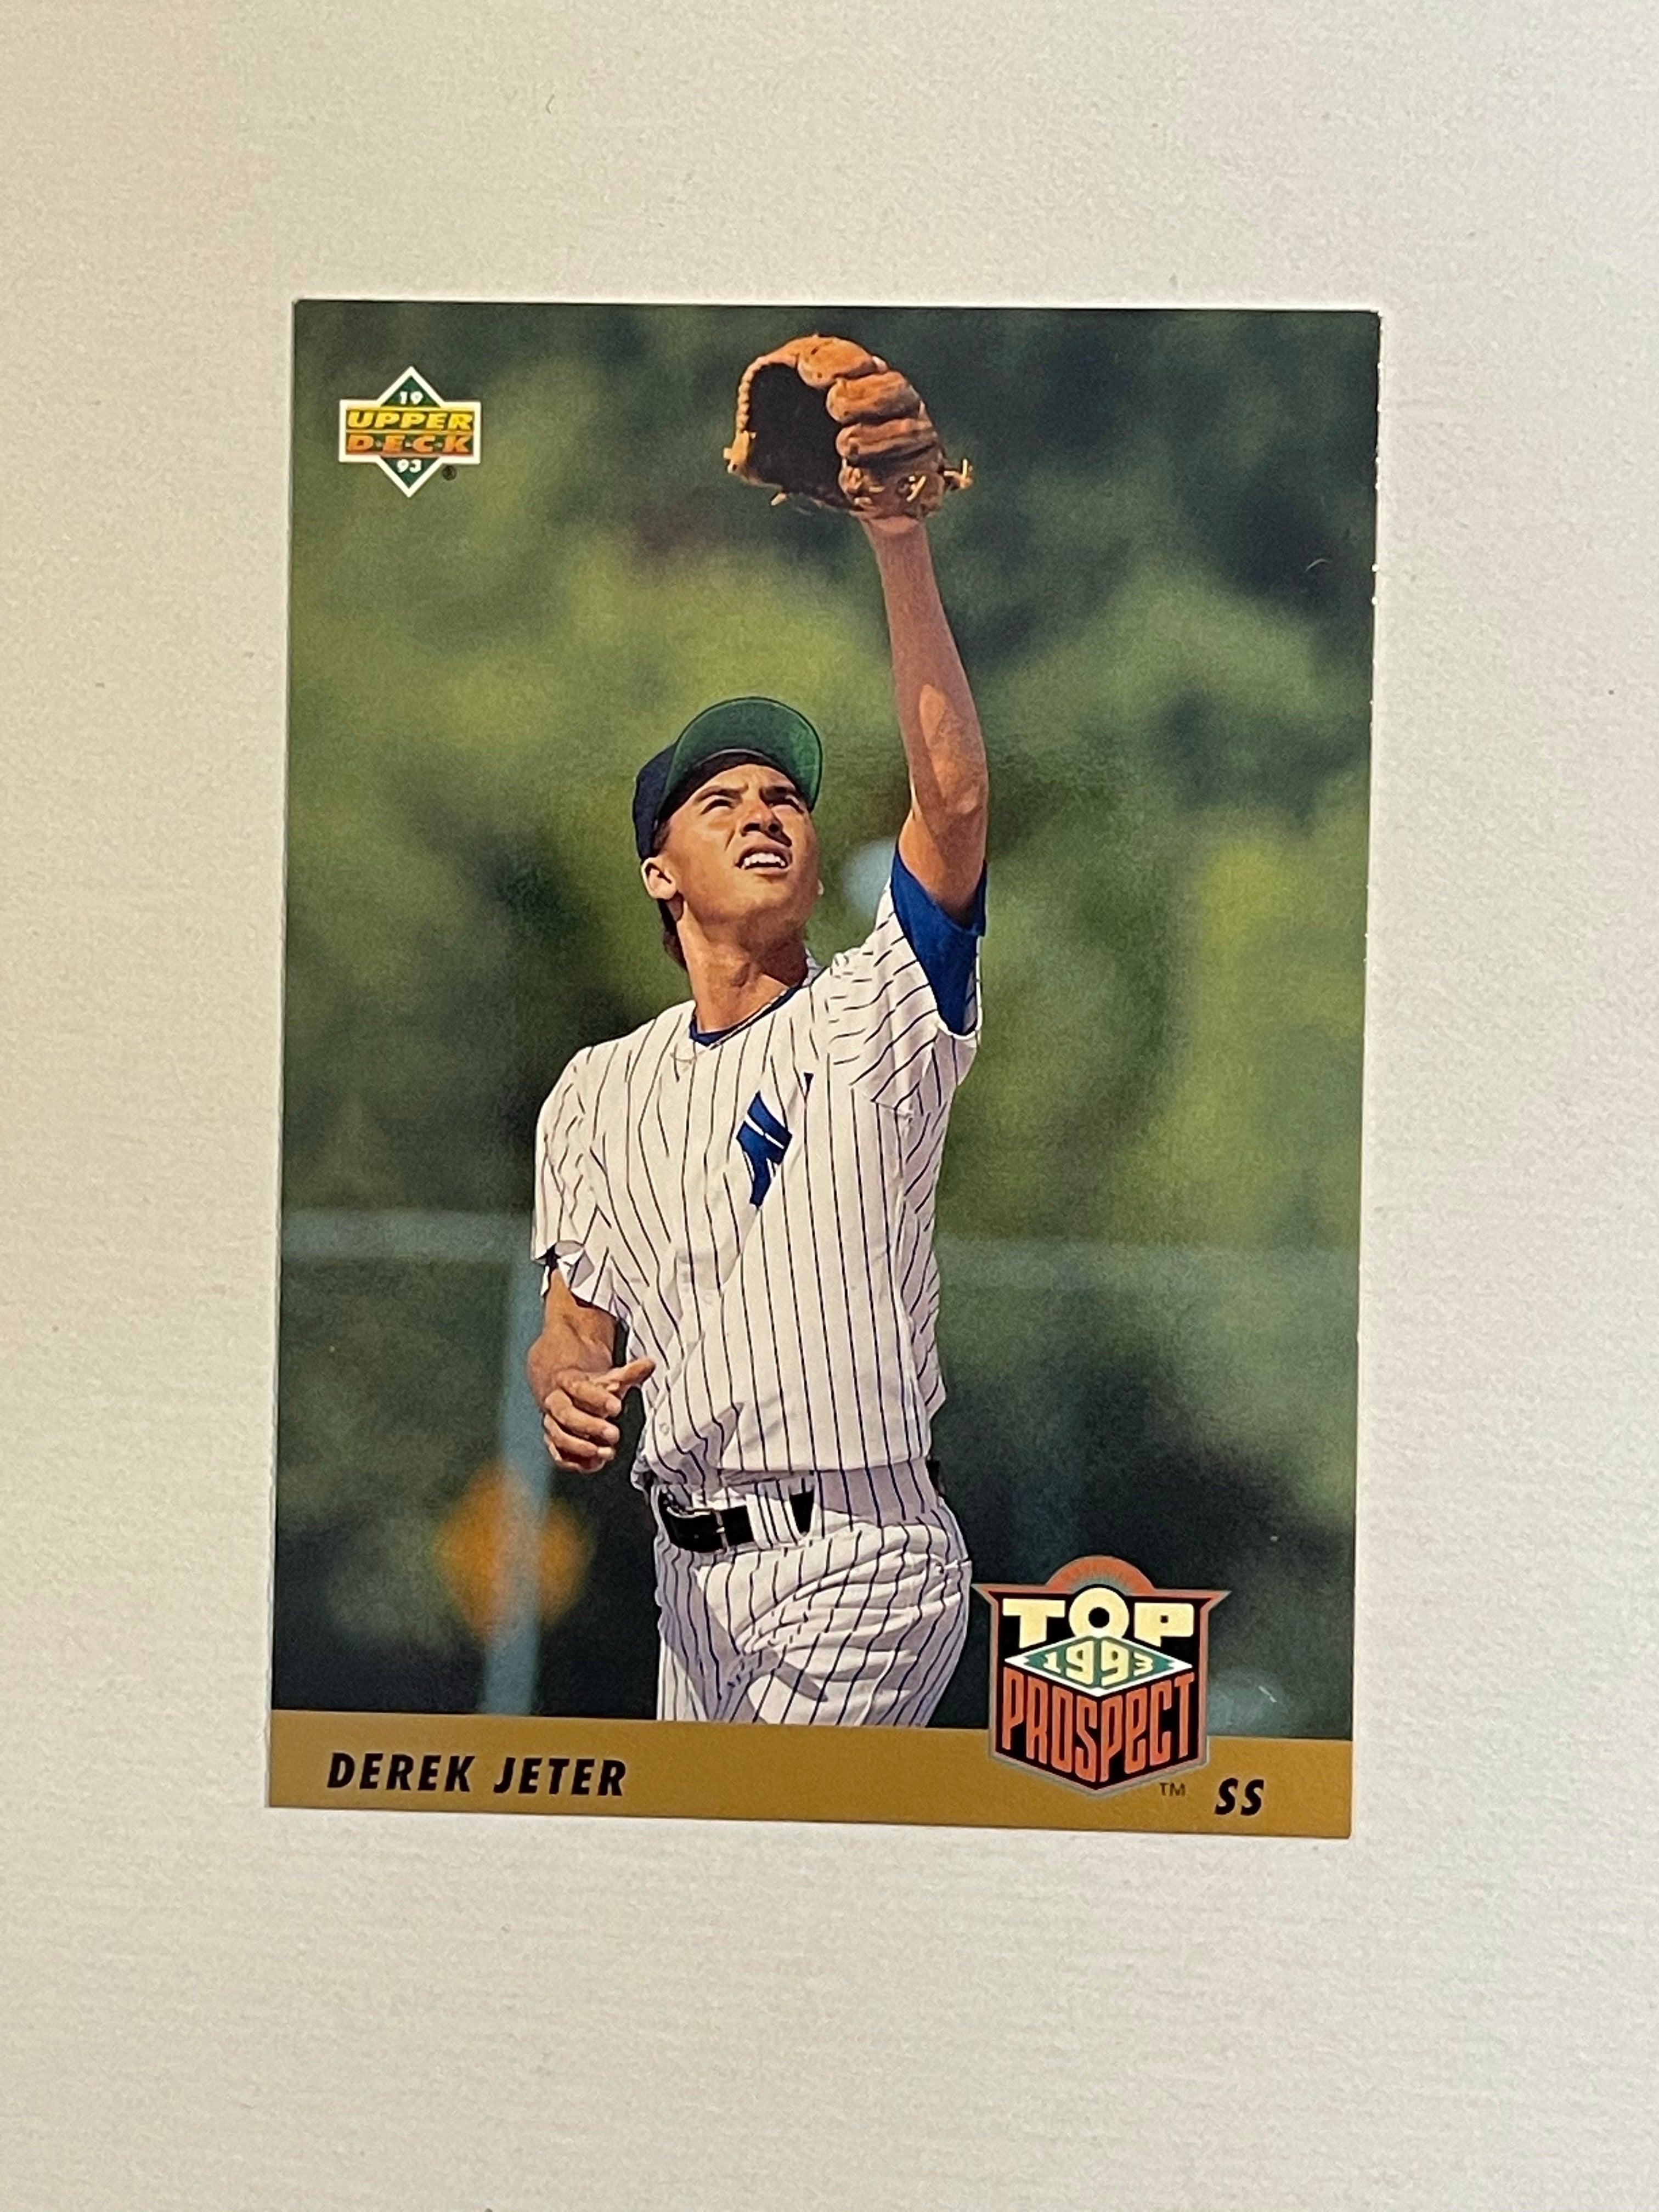 Derek Jeter Upper Deck Top Prospects high grade rookie baseball card 1993